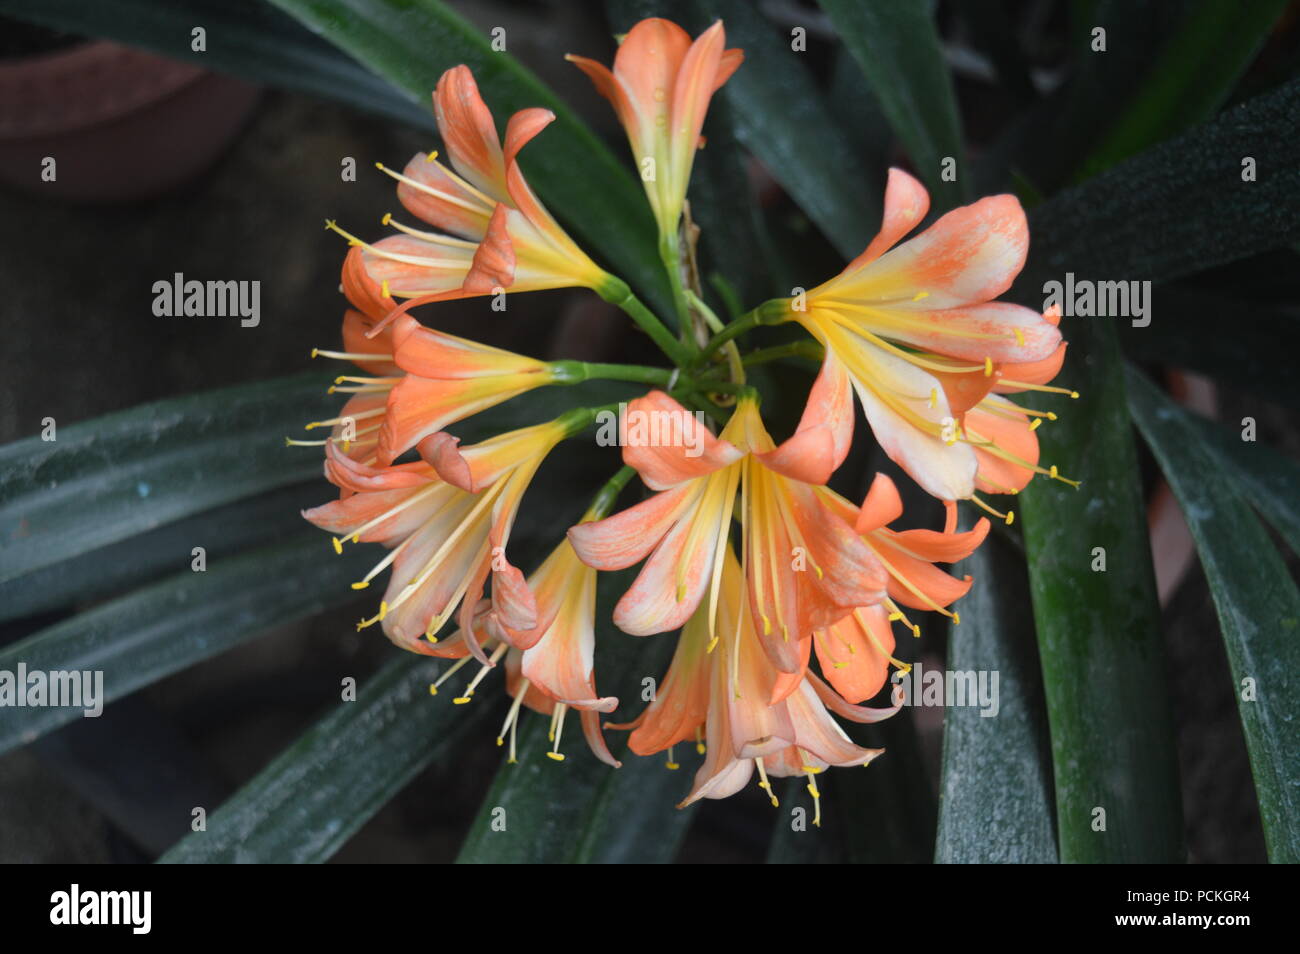 Clivia miniata lily Stock Photo